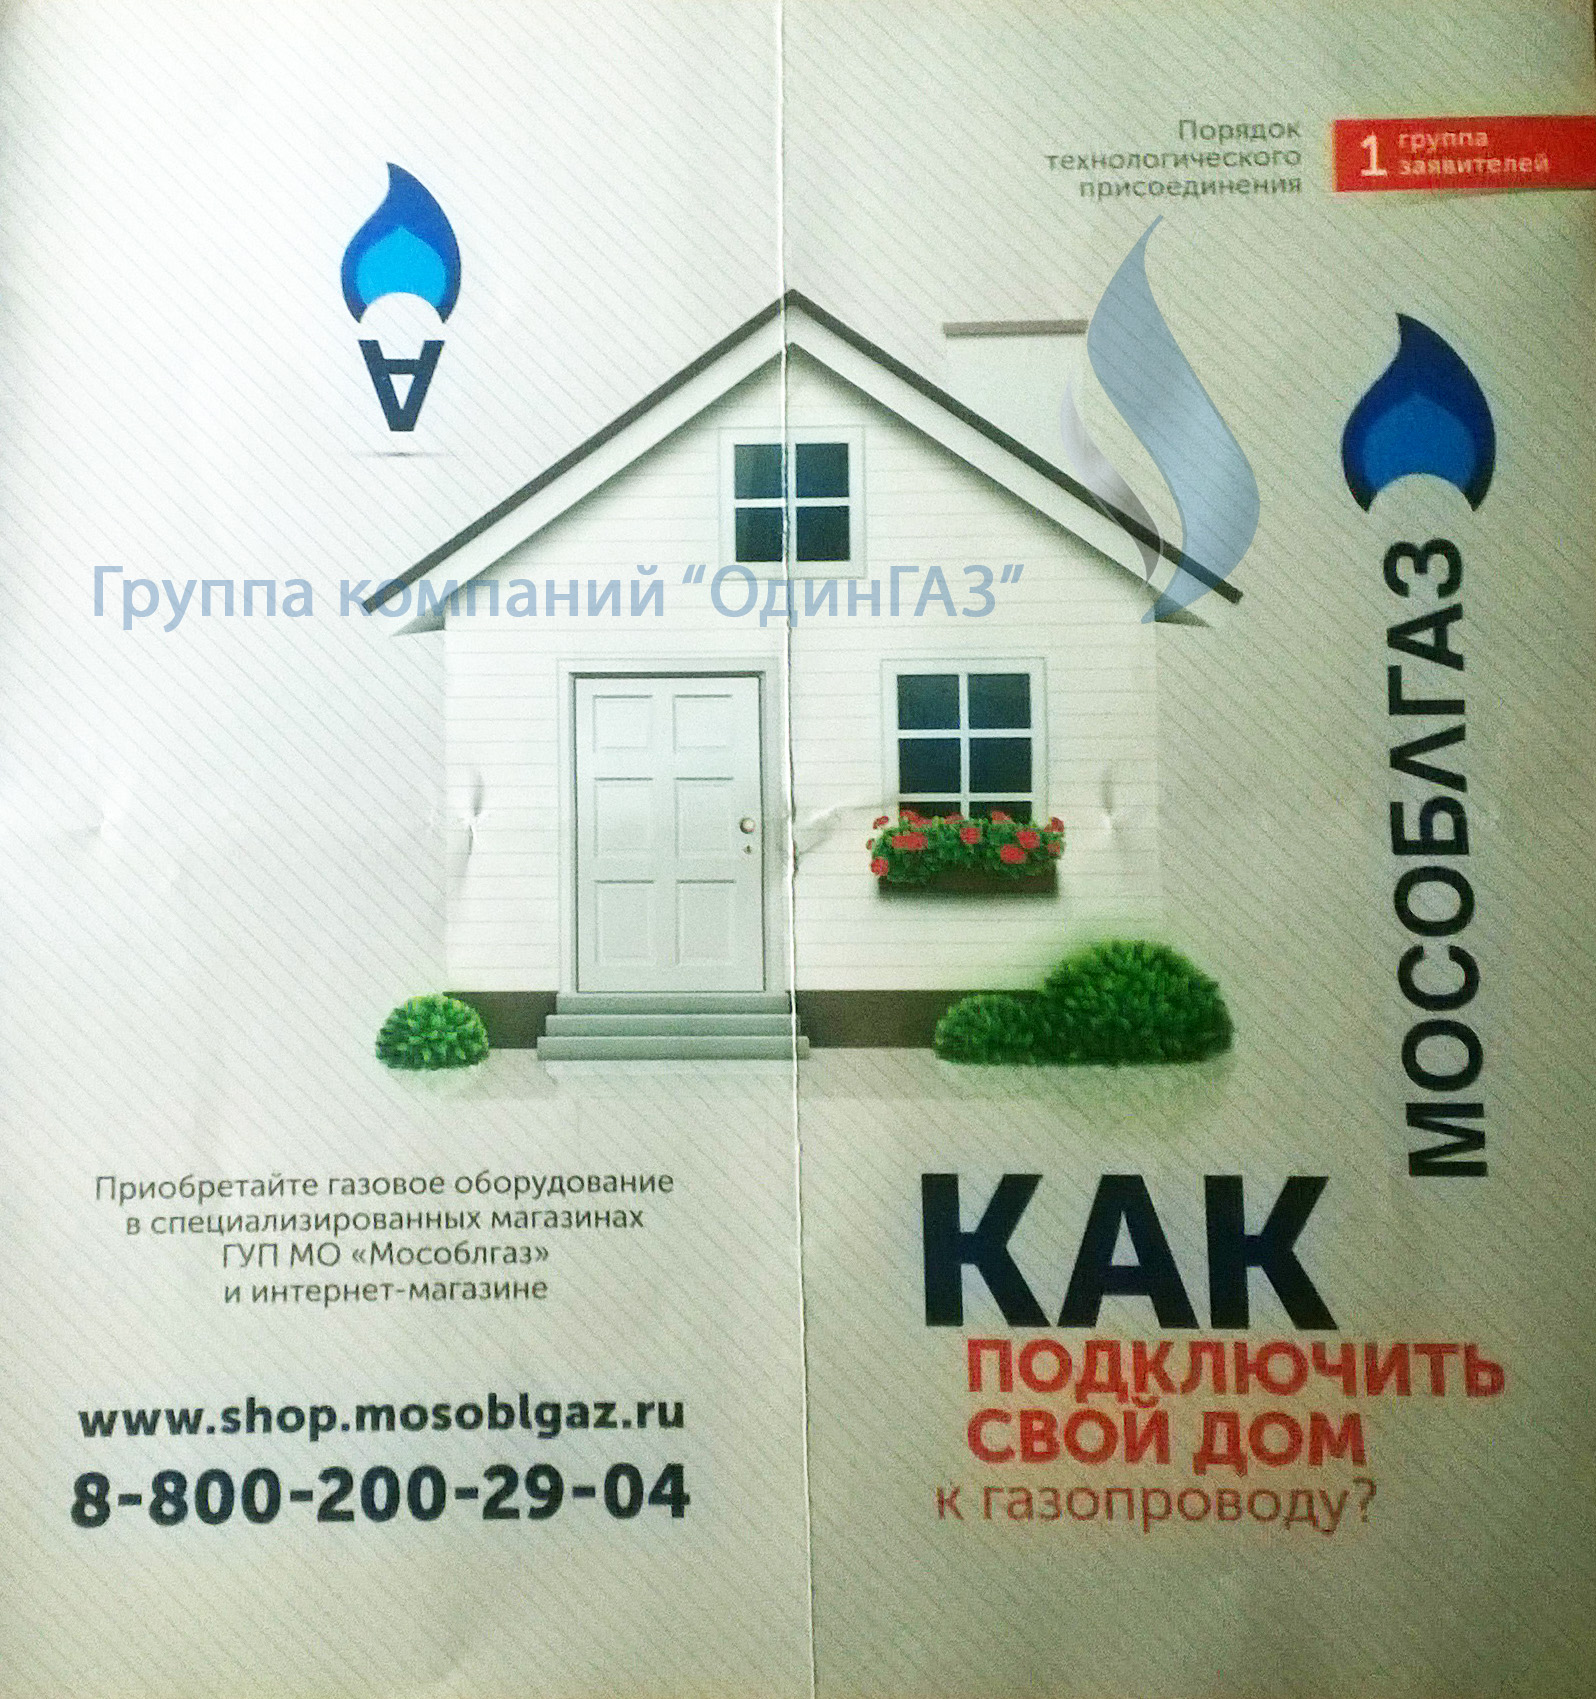 Новый закон о газификации с 1 марта 2014 г. в Московской области